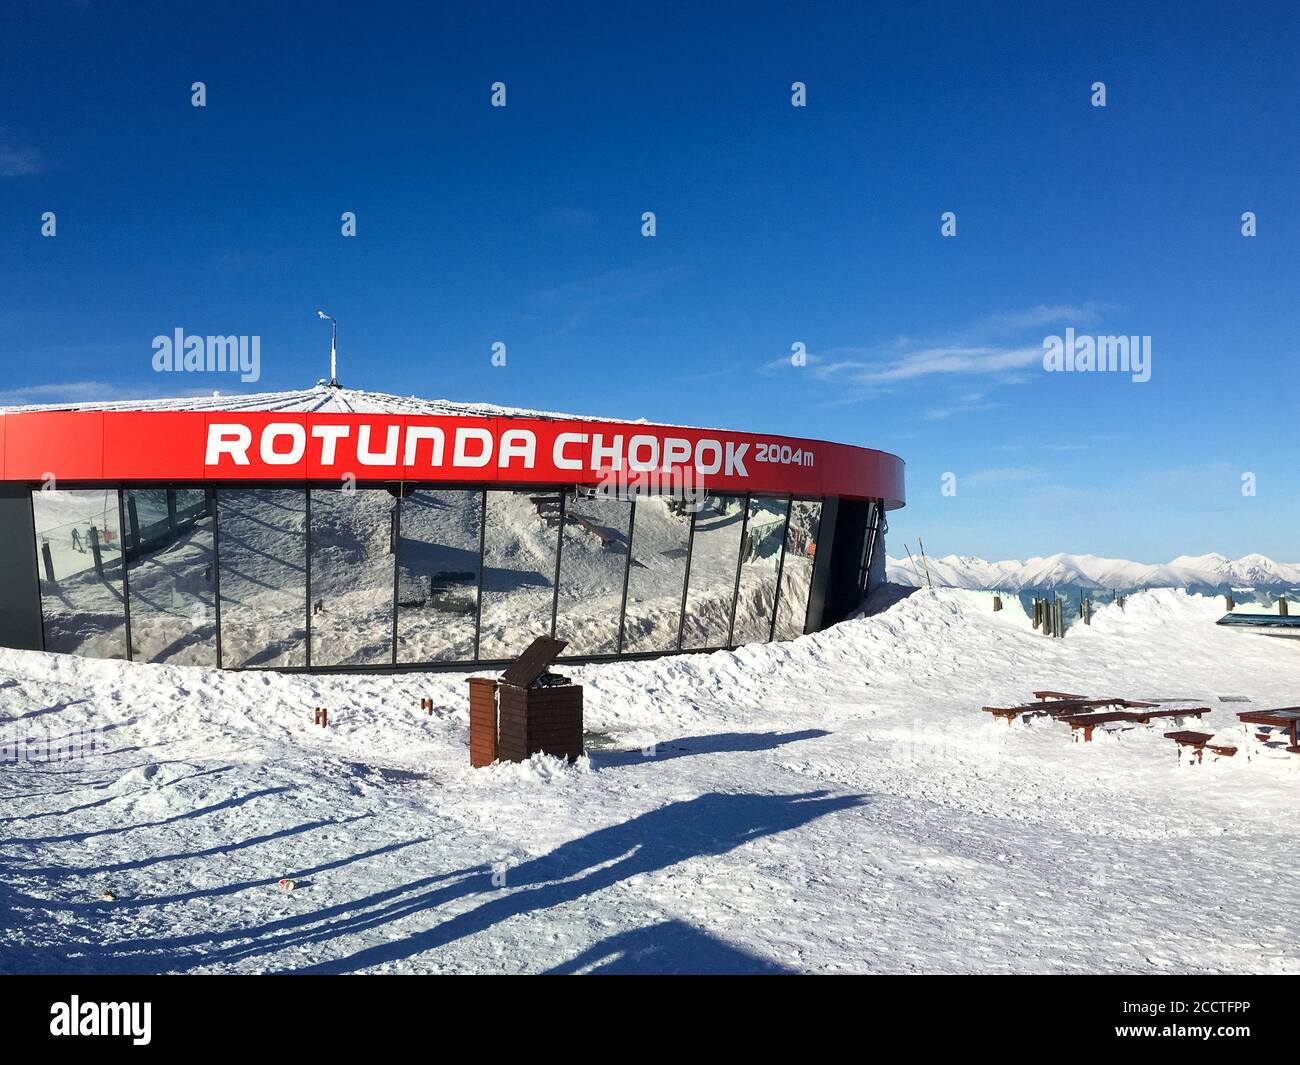 Le sommet de la colline Chopok en Slovaquie. Personne, ciel bleu clair et temps ensoleillé. Banque D'Images